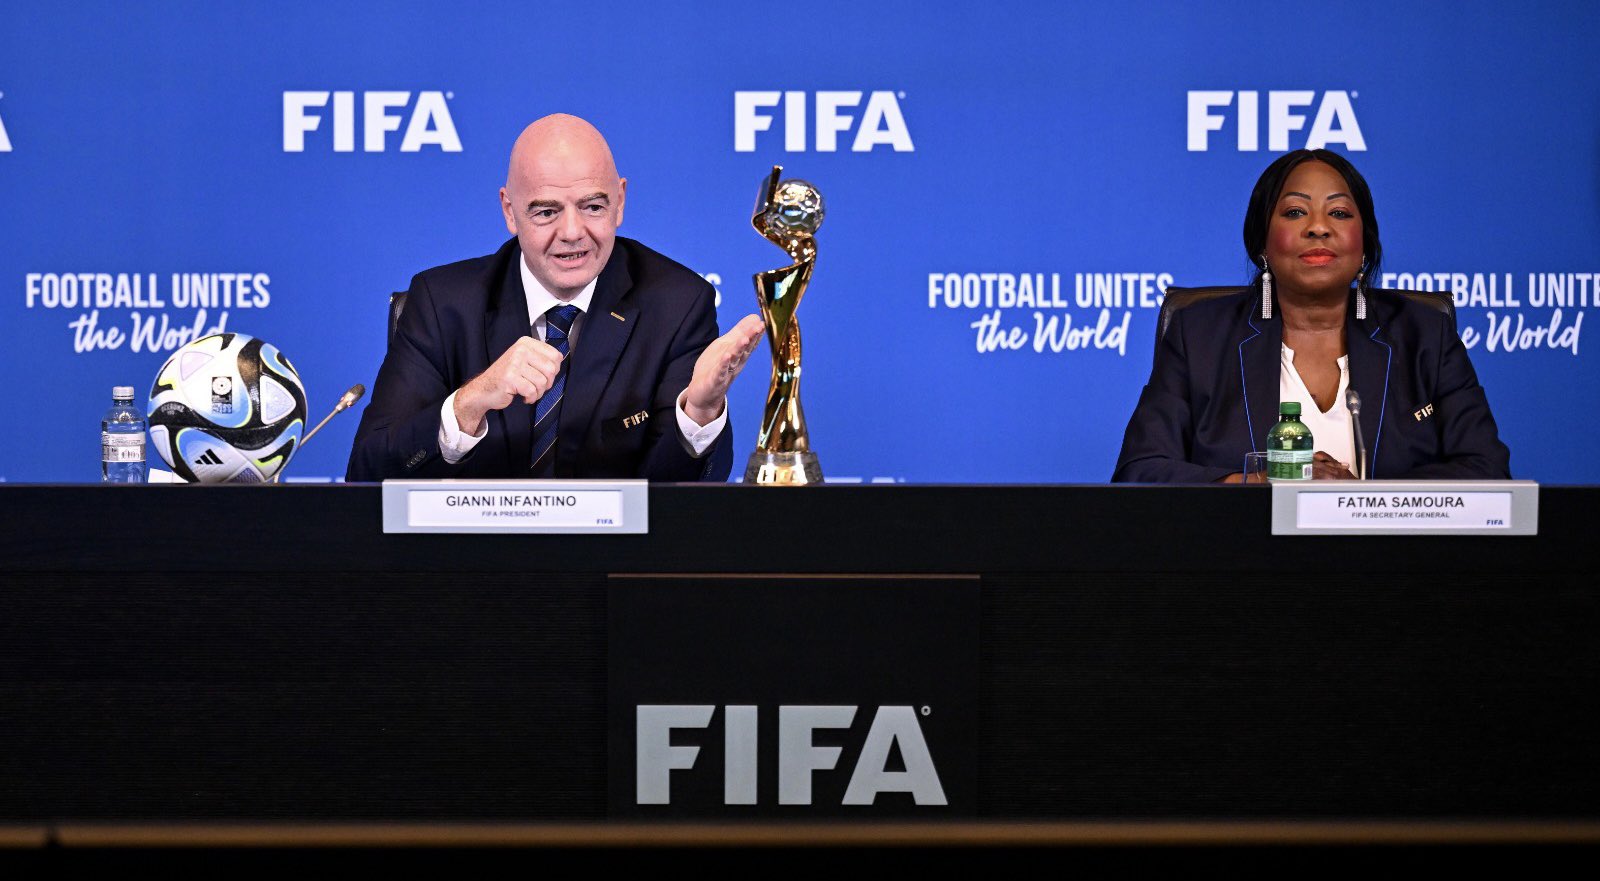 Novo Mundial de Clubes com 32 times ocorrerá nos EUA em 2025, diz Fifa